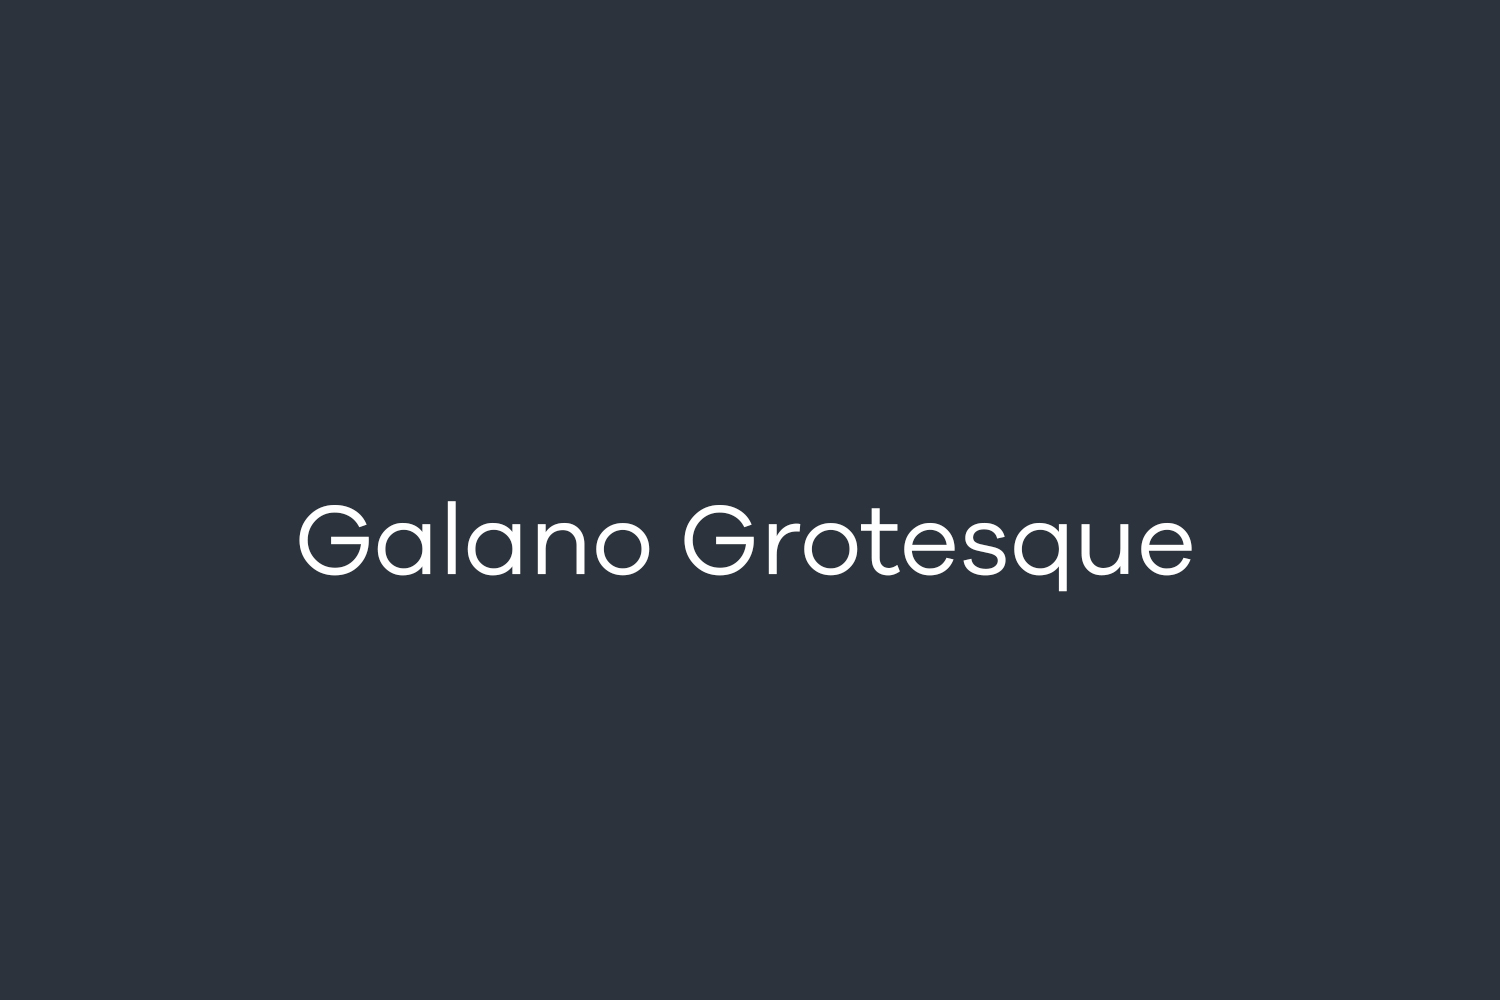 Galano Grotesque